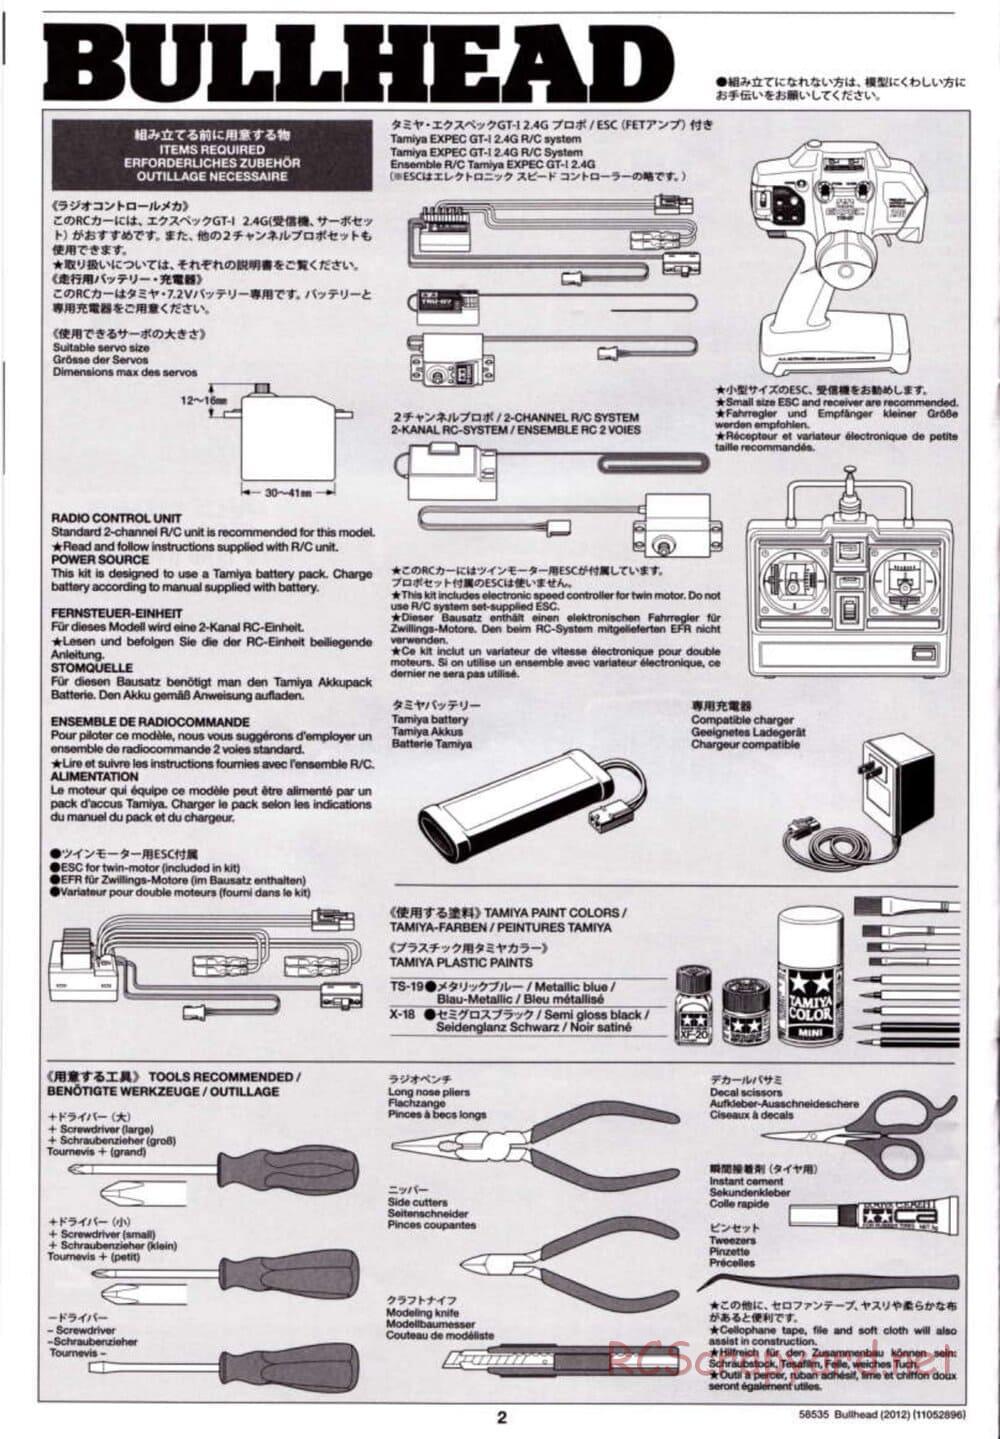 Tamiya - Bullhead 2012 - CB Chassis - Manual - Page 2